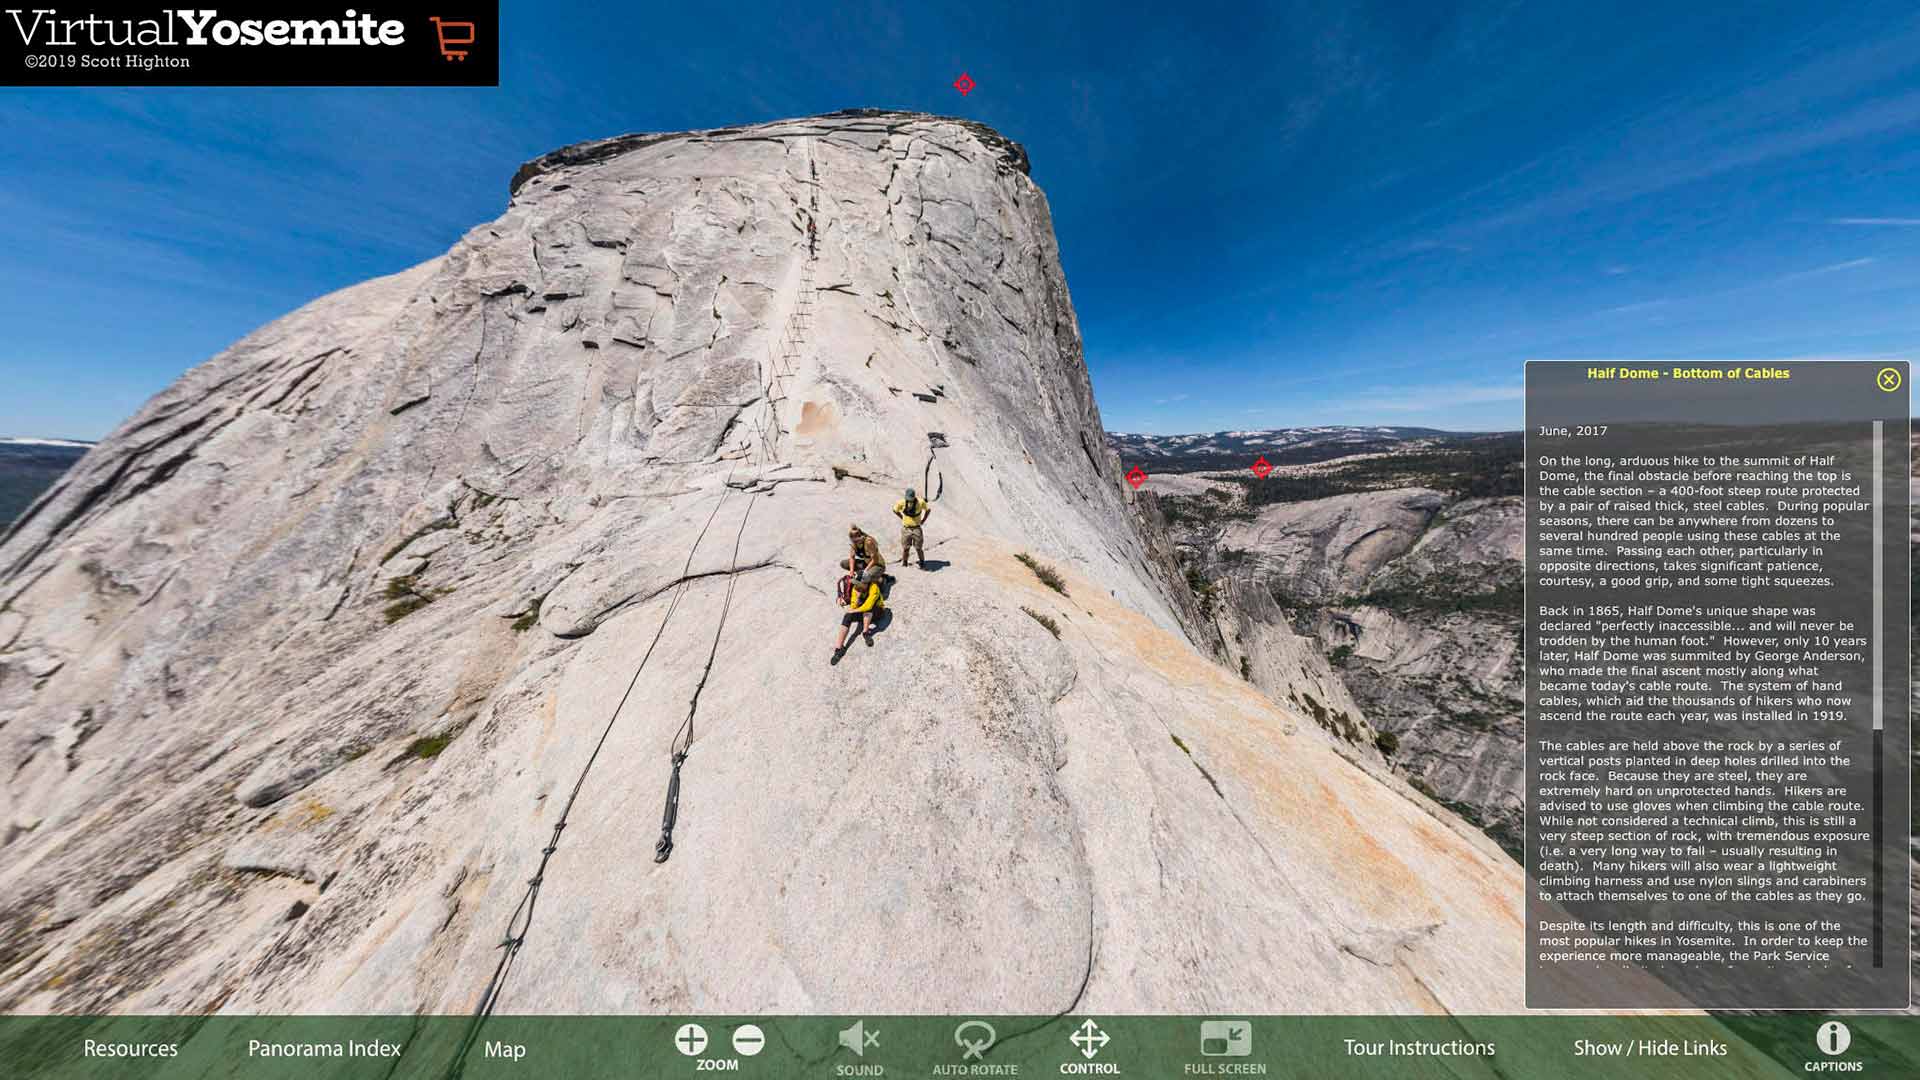 Screengrab from Virtual Yosemite website